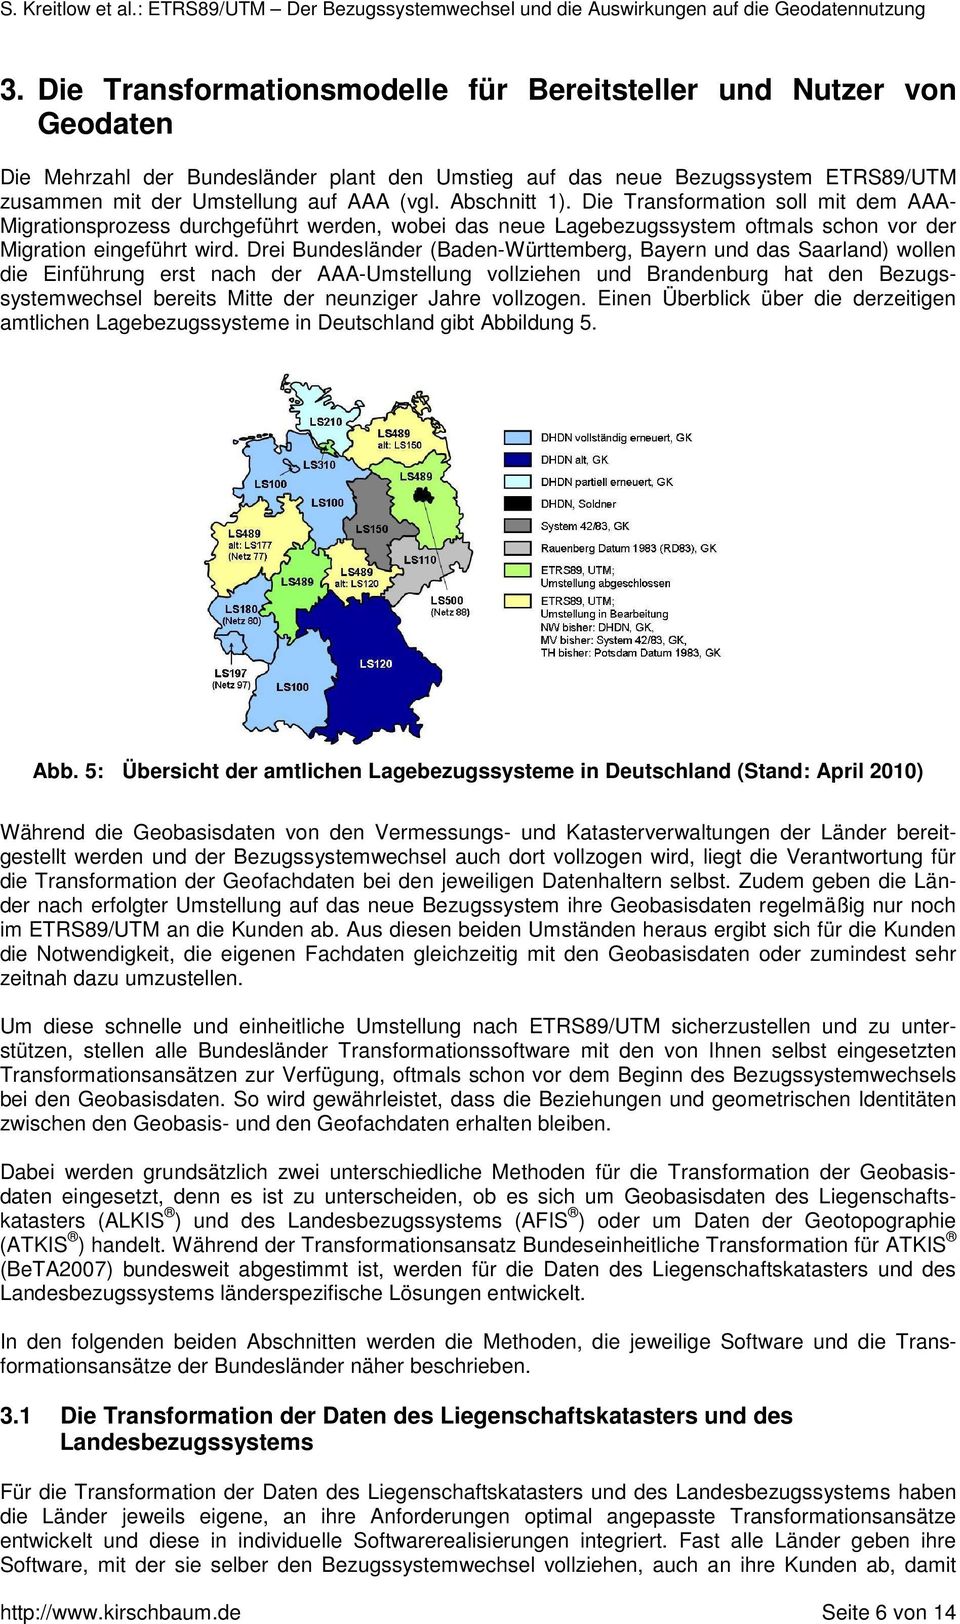 Drei Bundesländer (Baden-Württemberg, Bayern und das Saarland) wollen die Einführung erst nach der AAA-Umstellung vollziehen und Brandenburg hat den Bezugssystemwechsel bereits Mitte der neunziger